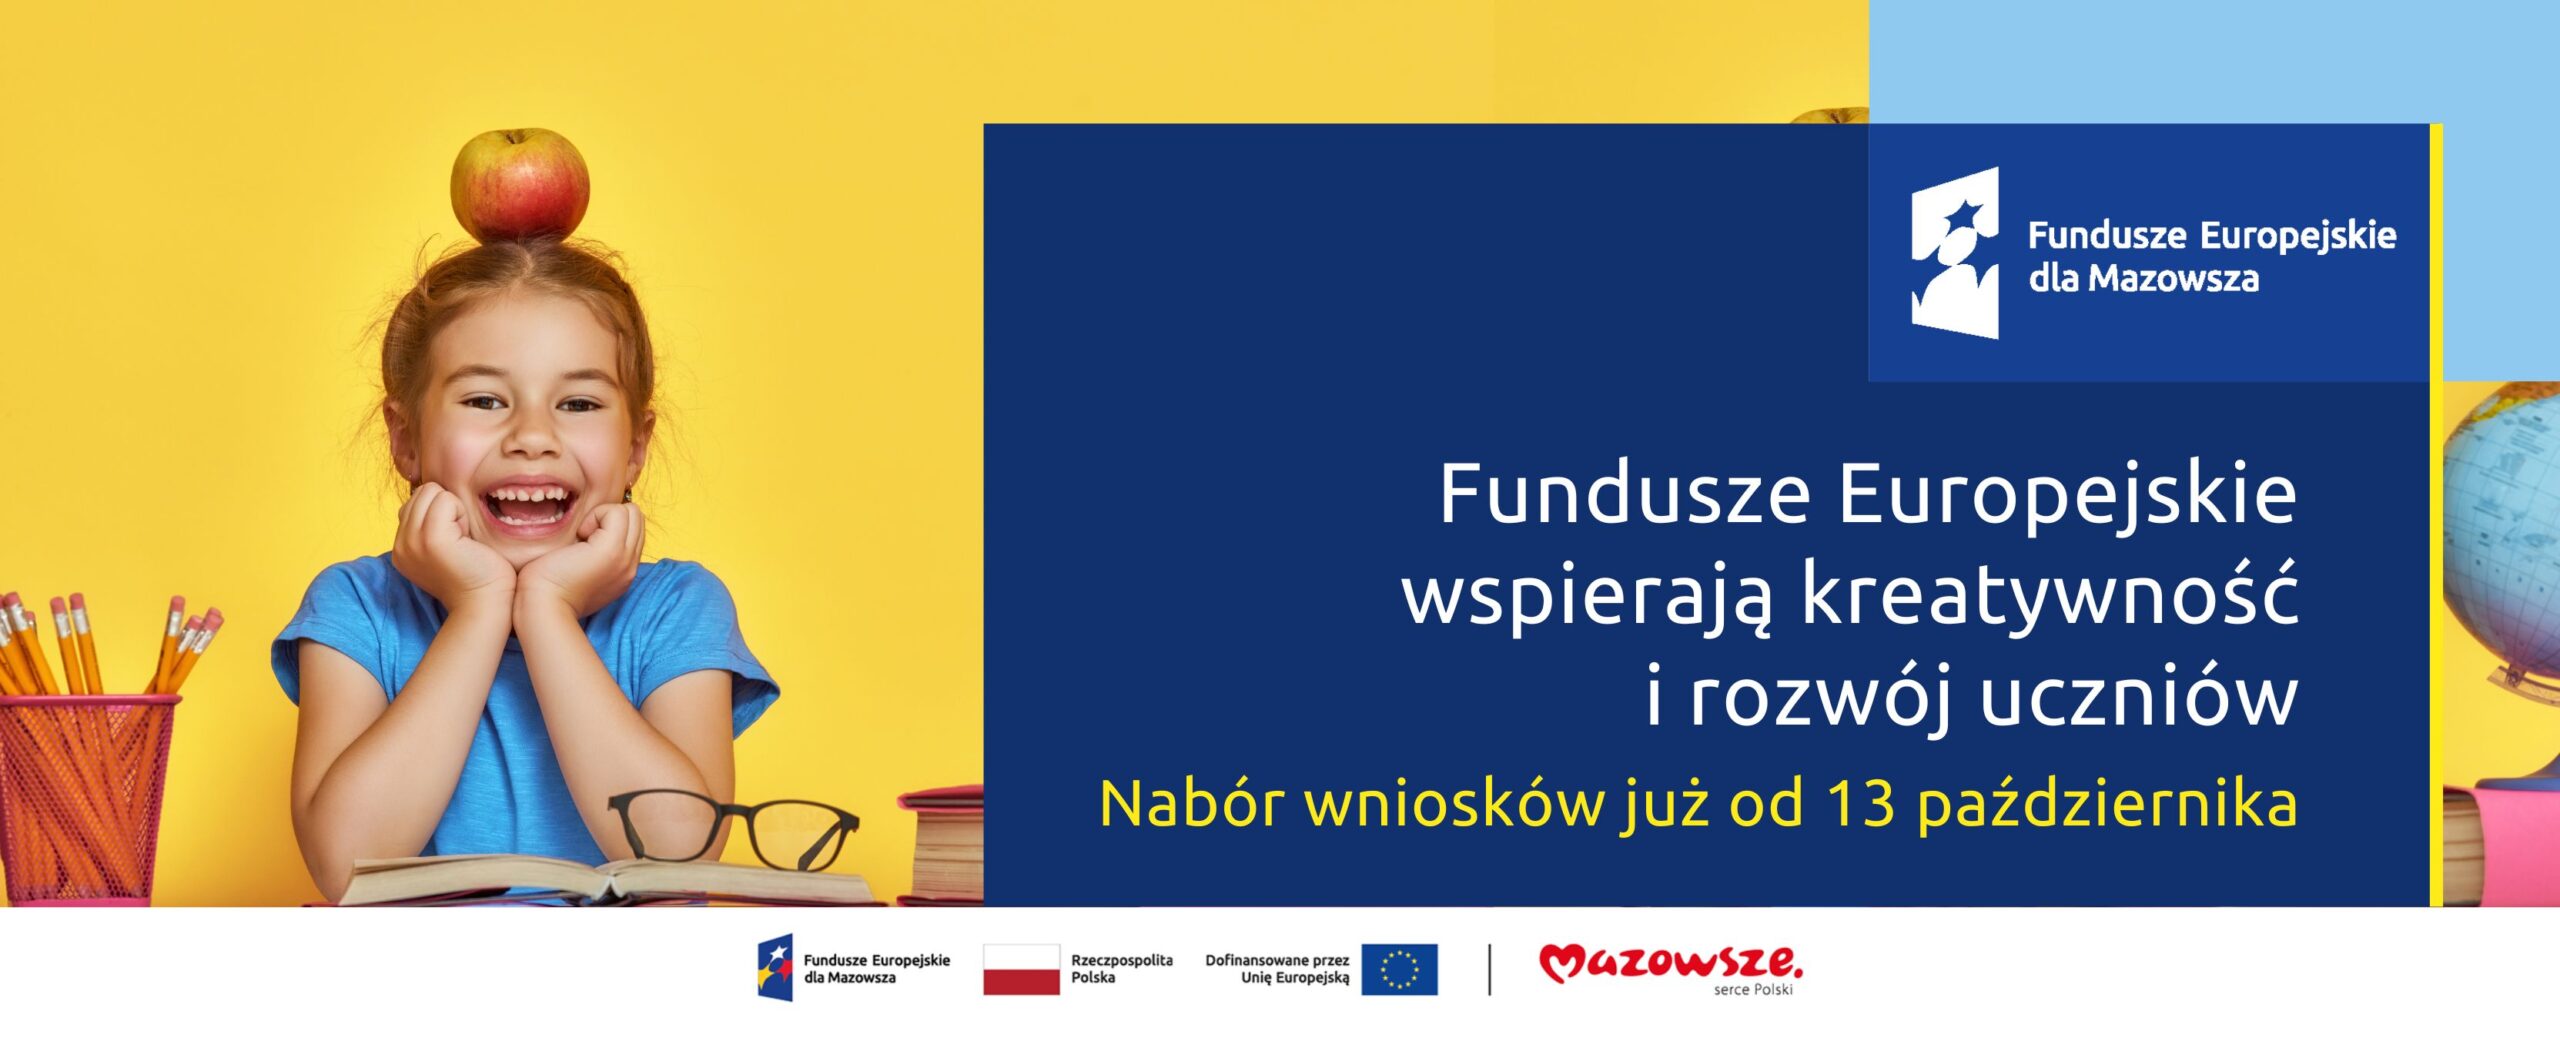 Grafika przedstawia napis Fundusze Europejskie wspierają kreatywność i rozwój uczniów. Nabór wniosków już od 13 października. Na zdjęciu widać uśmiechniętą dziewczynkę która siedzi przy biurku nad otwartą książką.